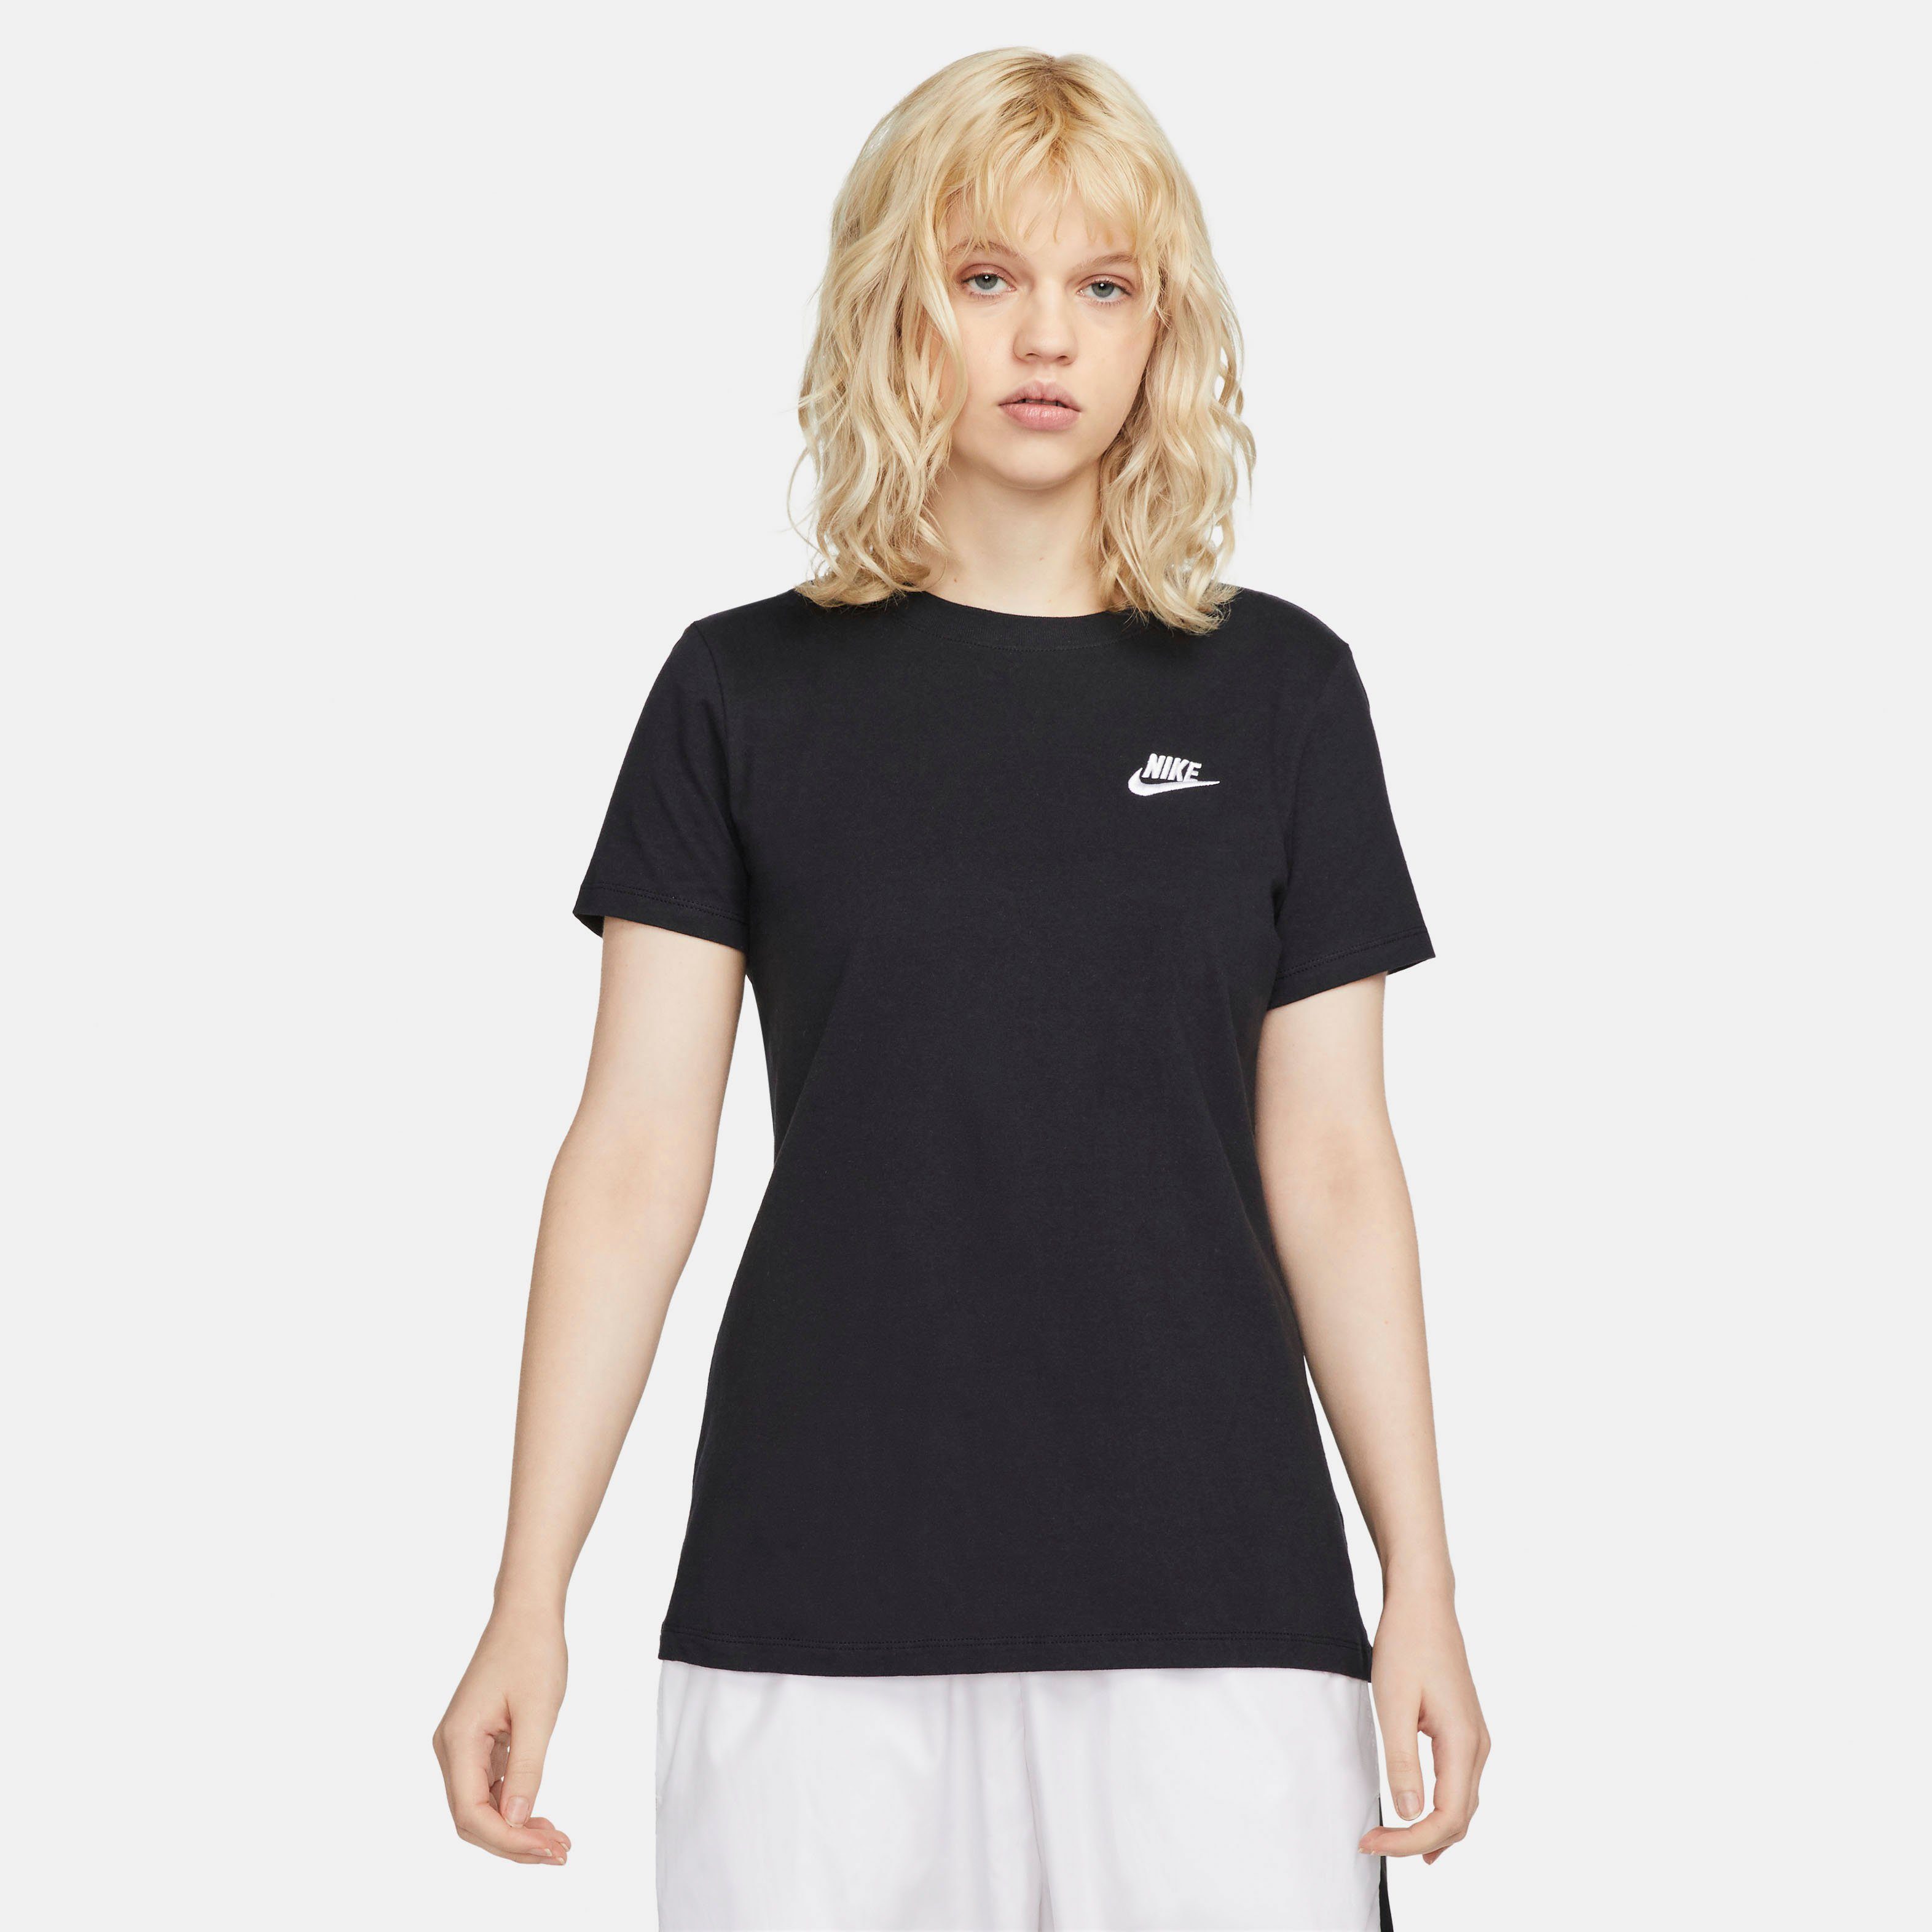 Günstige Nike Shirts online kaufen » Bis zu 40% Rabatt | OTTO